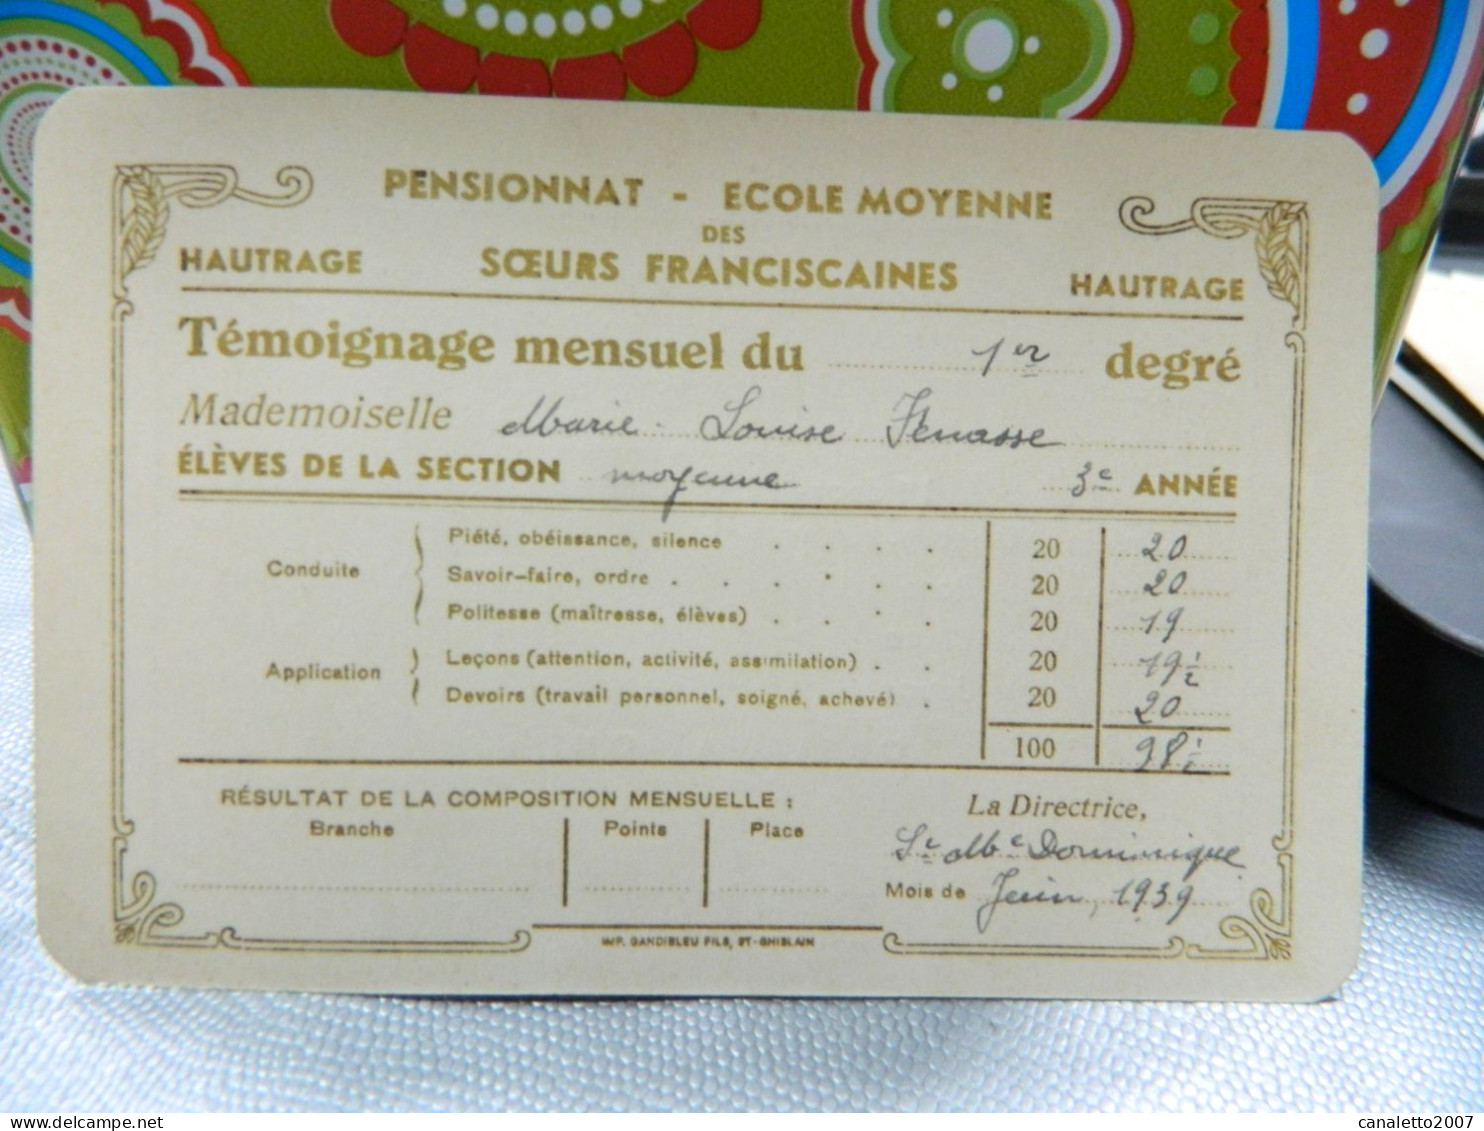 HAUTRAGE: TEMOIGNAGE MENSUEL DU PENSIONNAT ECOLE MOYENNE DES SOEURS FRANCISCAINES  DE MARIE LOUISE FENASSE EN 1959 - Diploma & School Reports